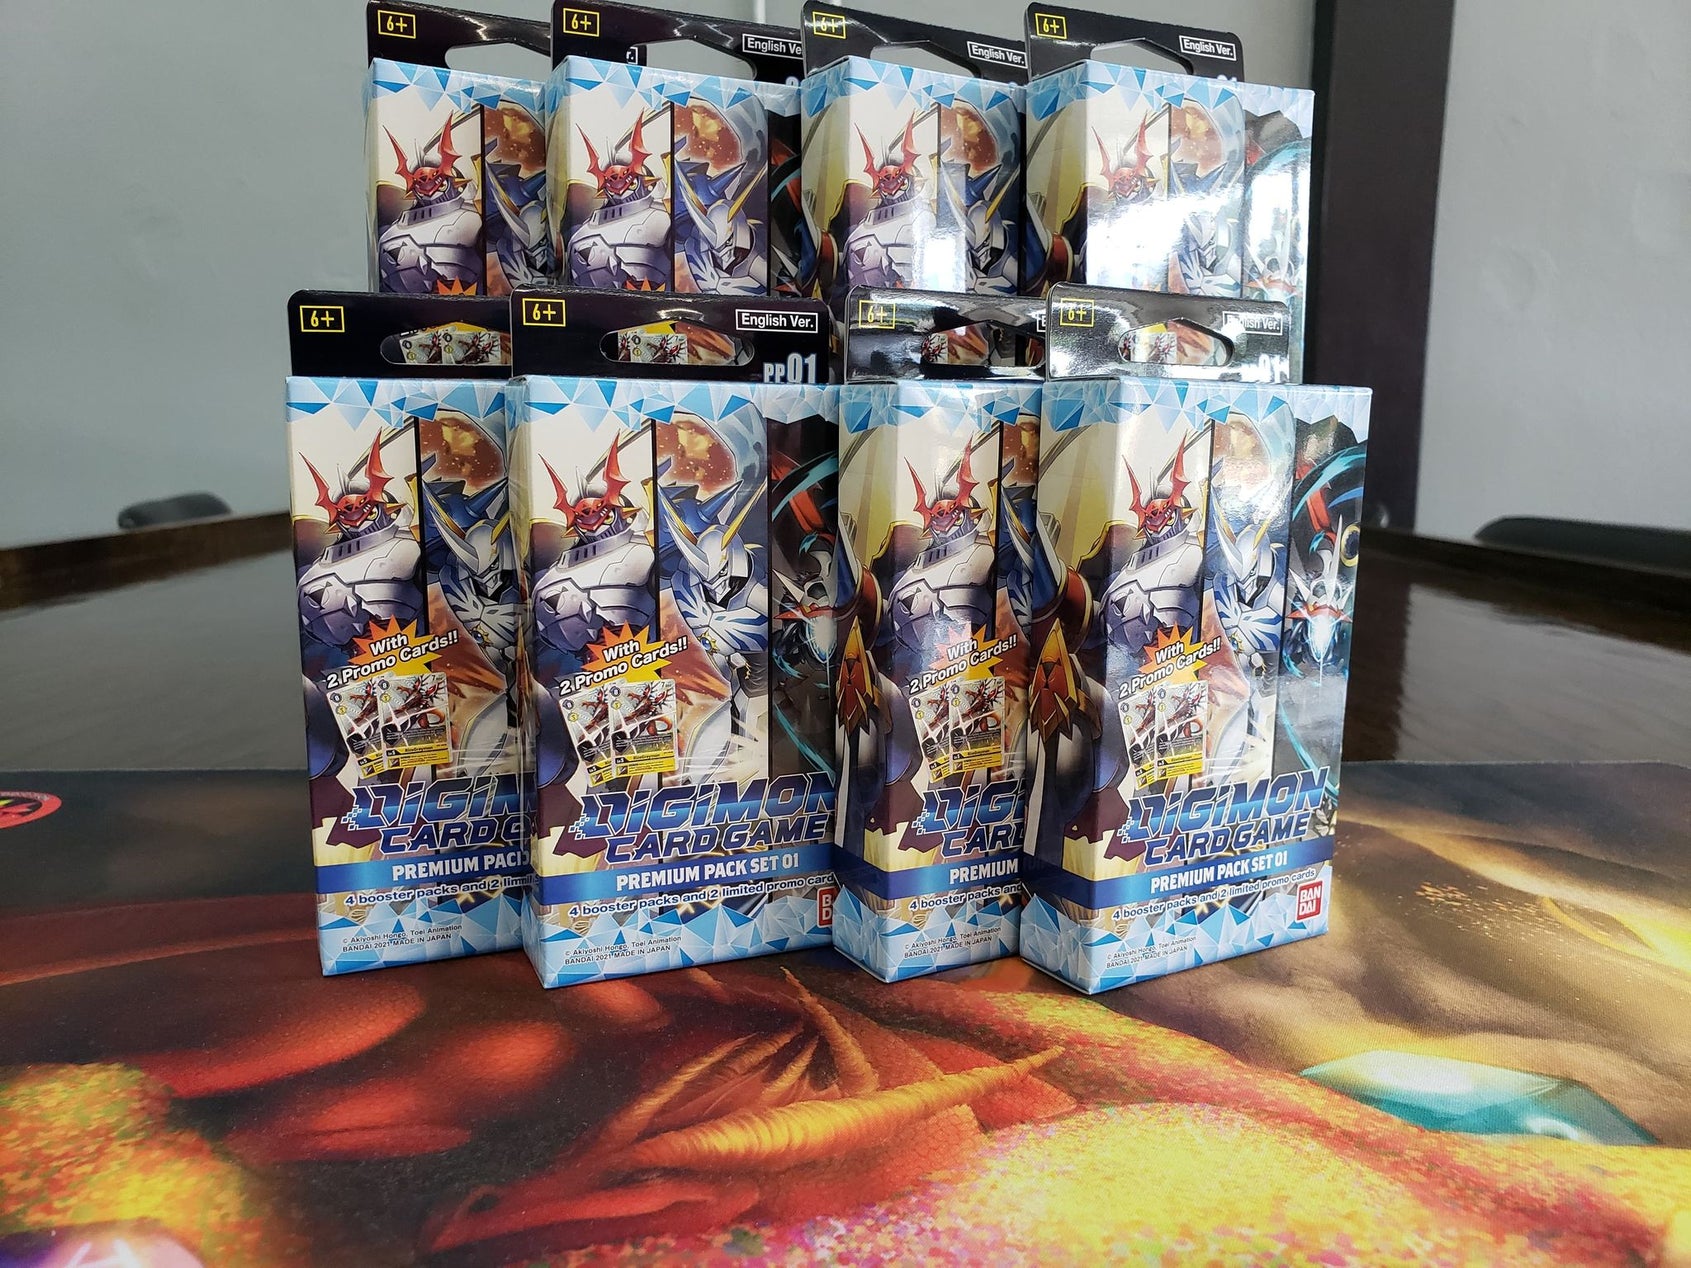 Digimon Premium packs